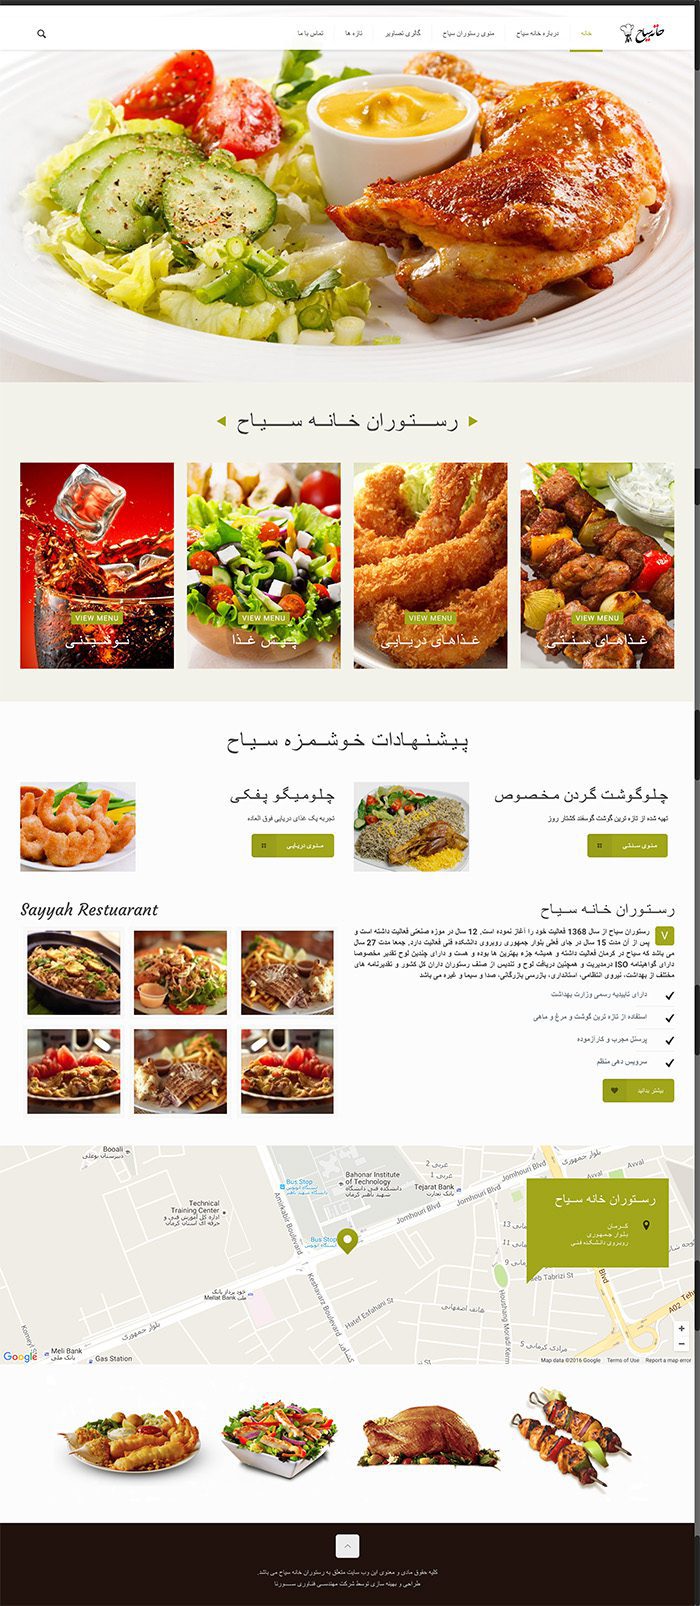 طراحی سایت رستوران خانه سیاح توسط شرکت طراحی سایت سورنا در کرمان